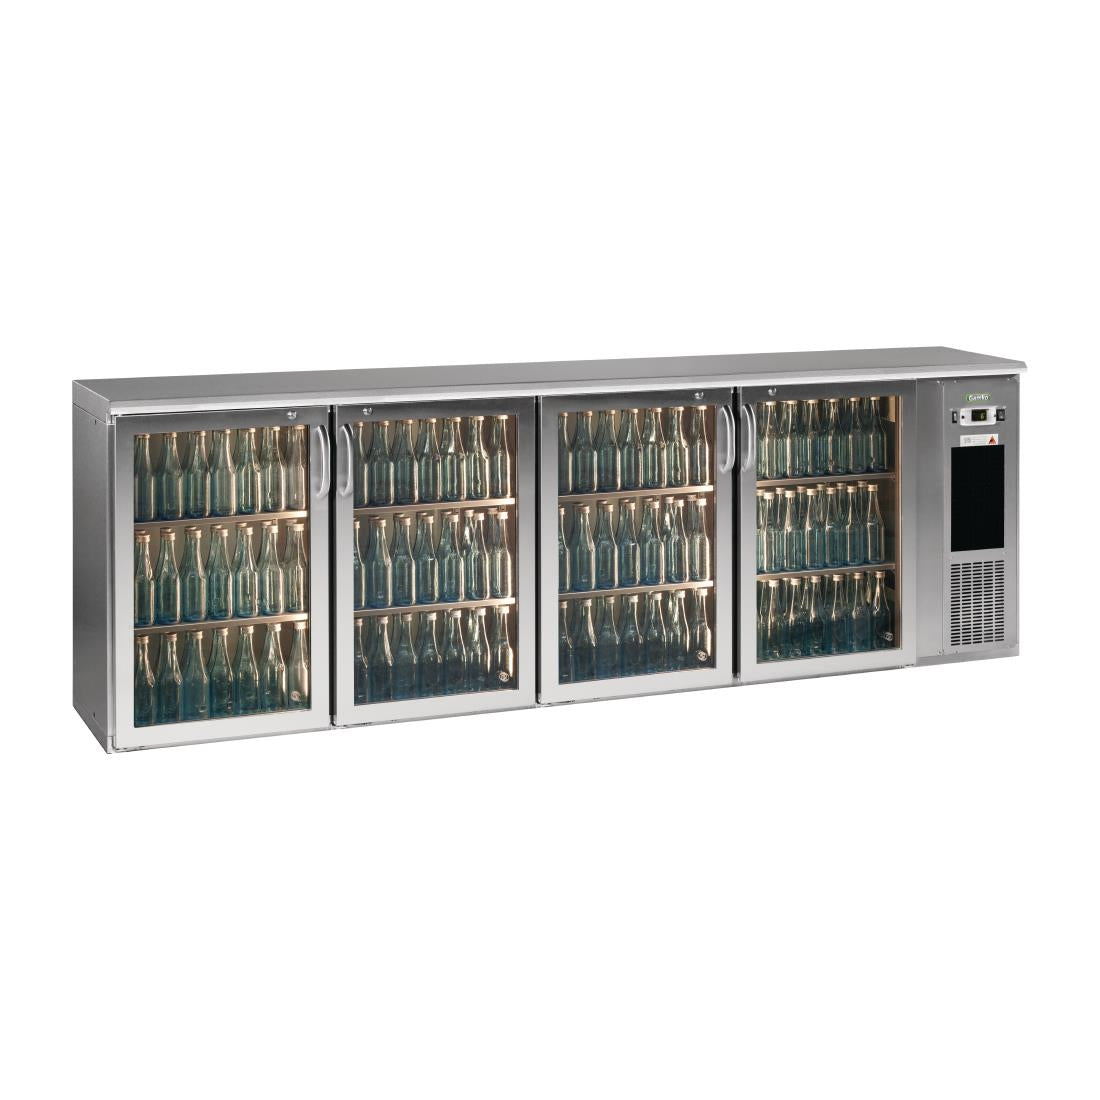 FD031 E3 4 x glass door undercounter bottle cooler JD Catering Equipment Solutions Ltd